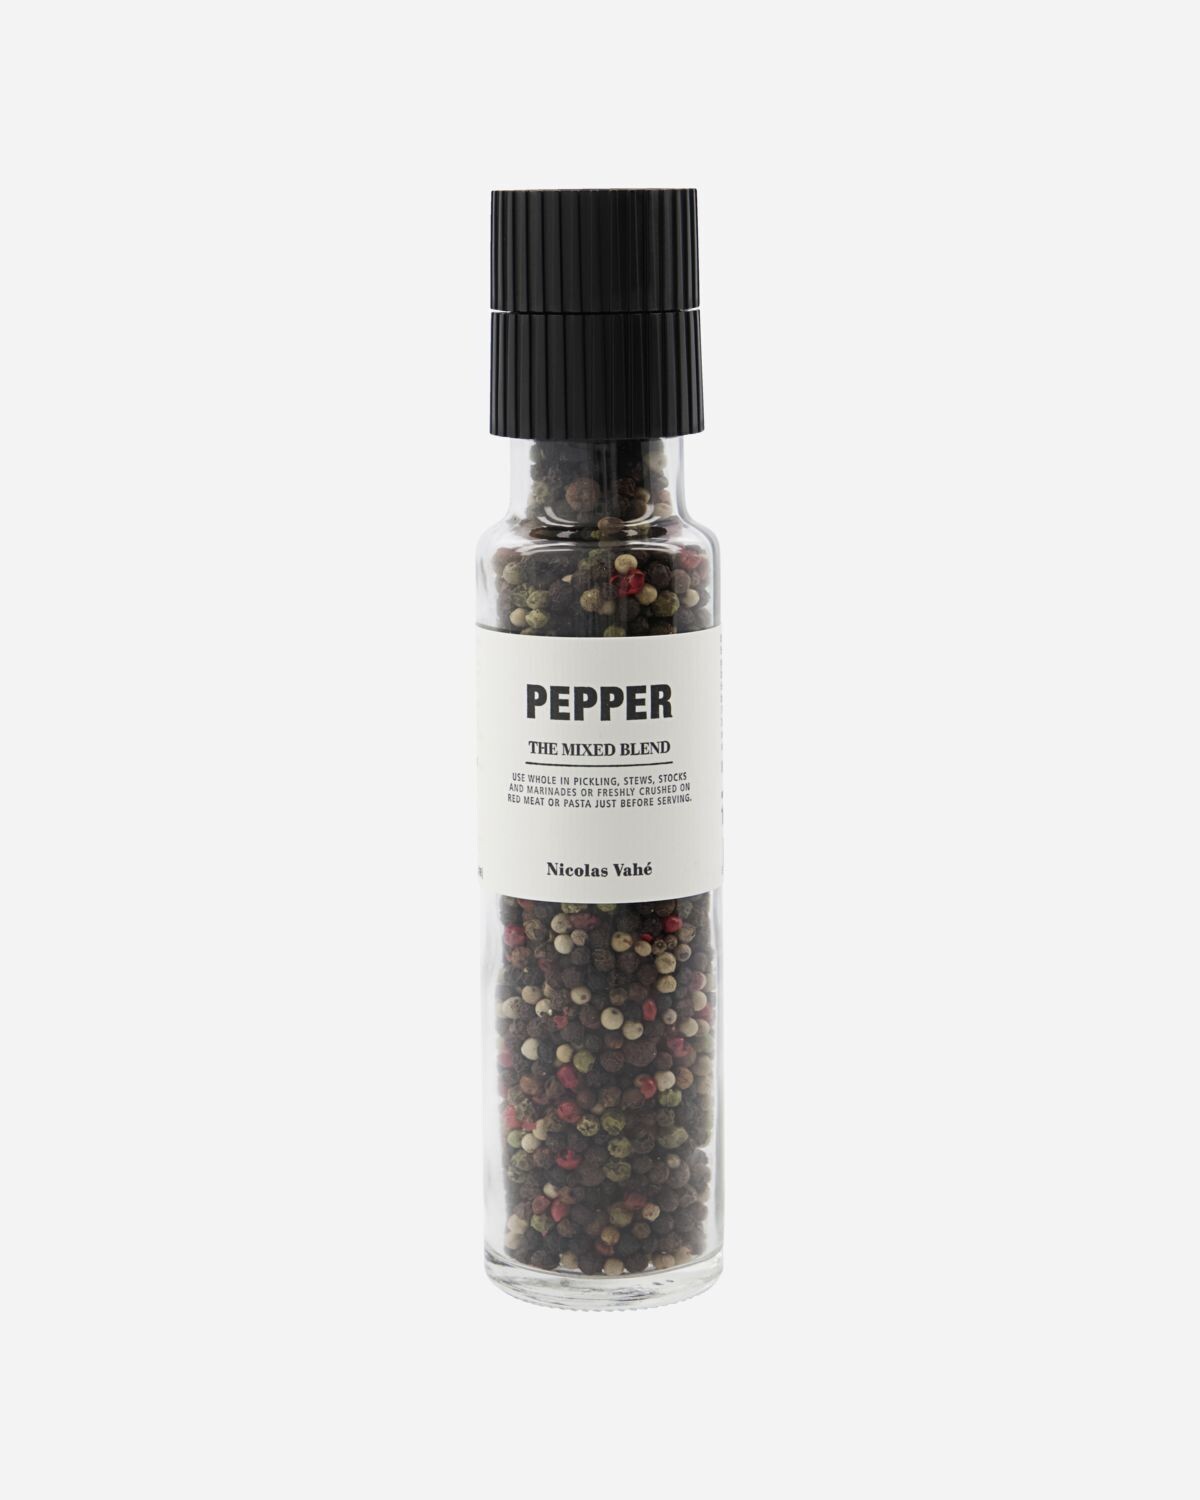 Pepper, "The mixed blend", 140 g